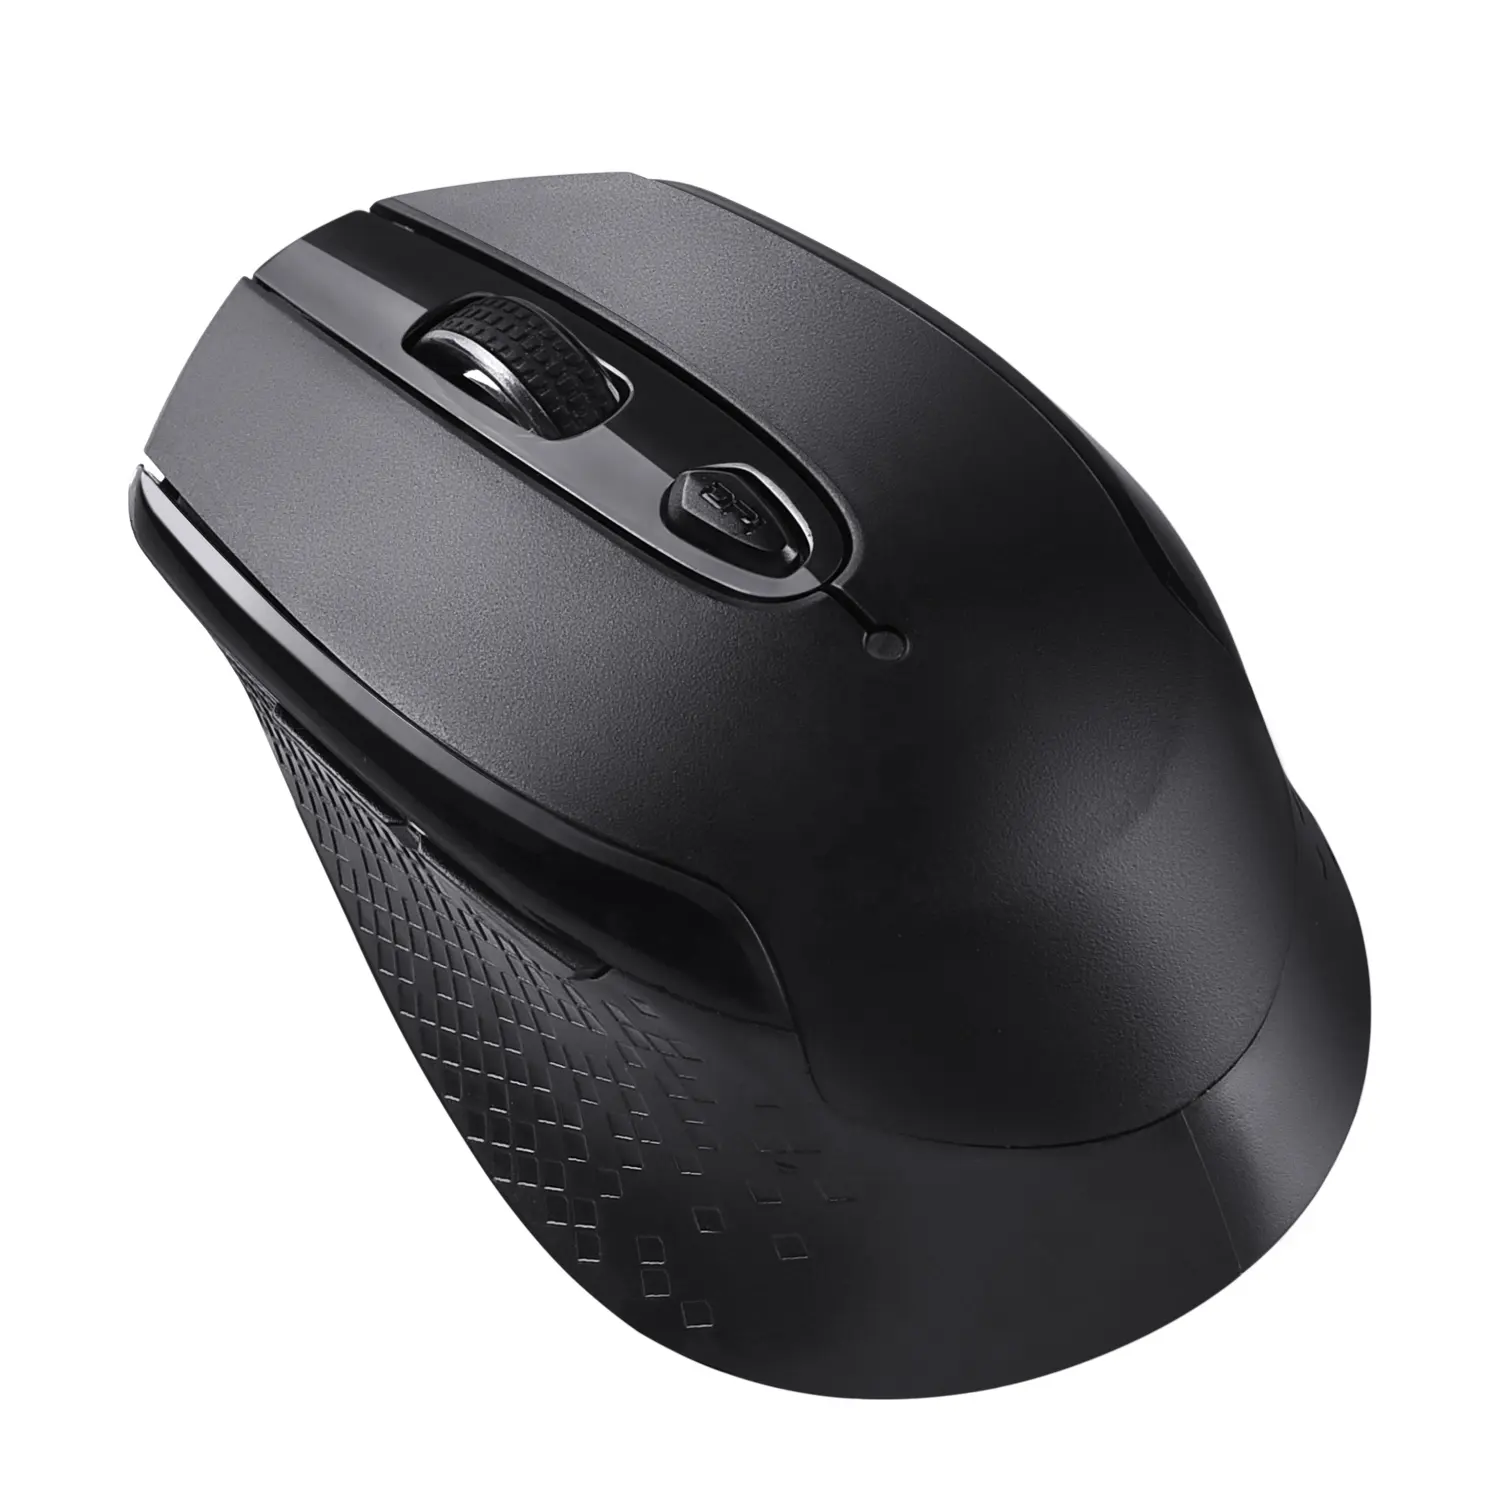 OEM personalizado marca silenciosa computadora ratón inalámbrico de 2,4 Ghz USB ratón óptico inalámbrico cliente ratón para oficina